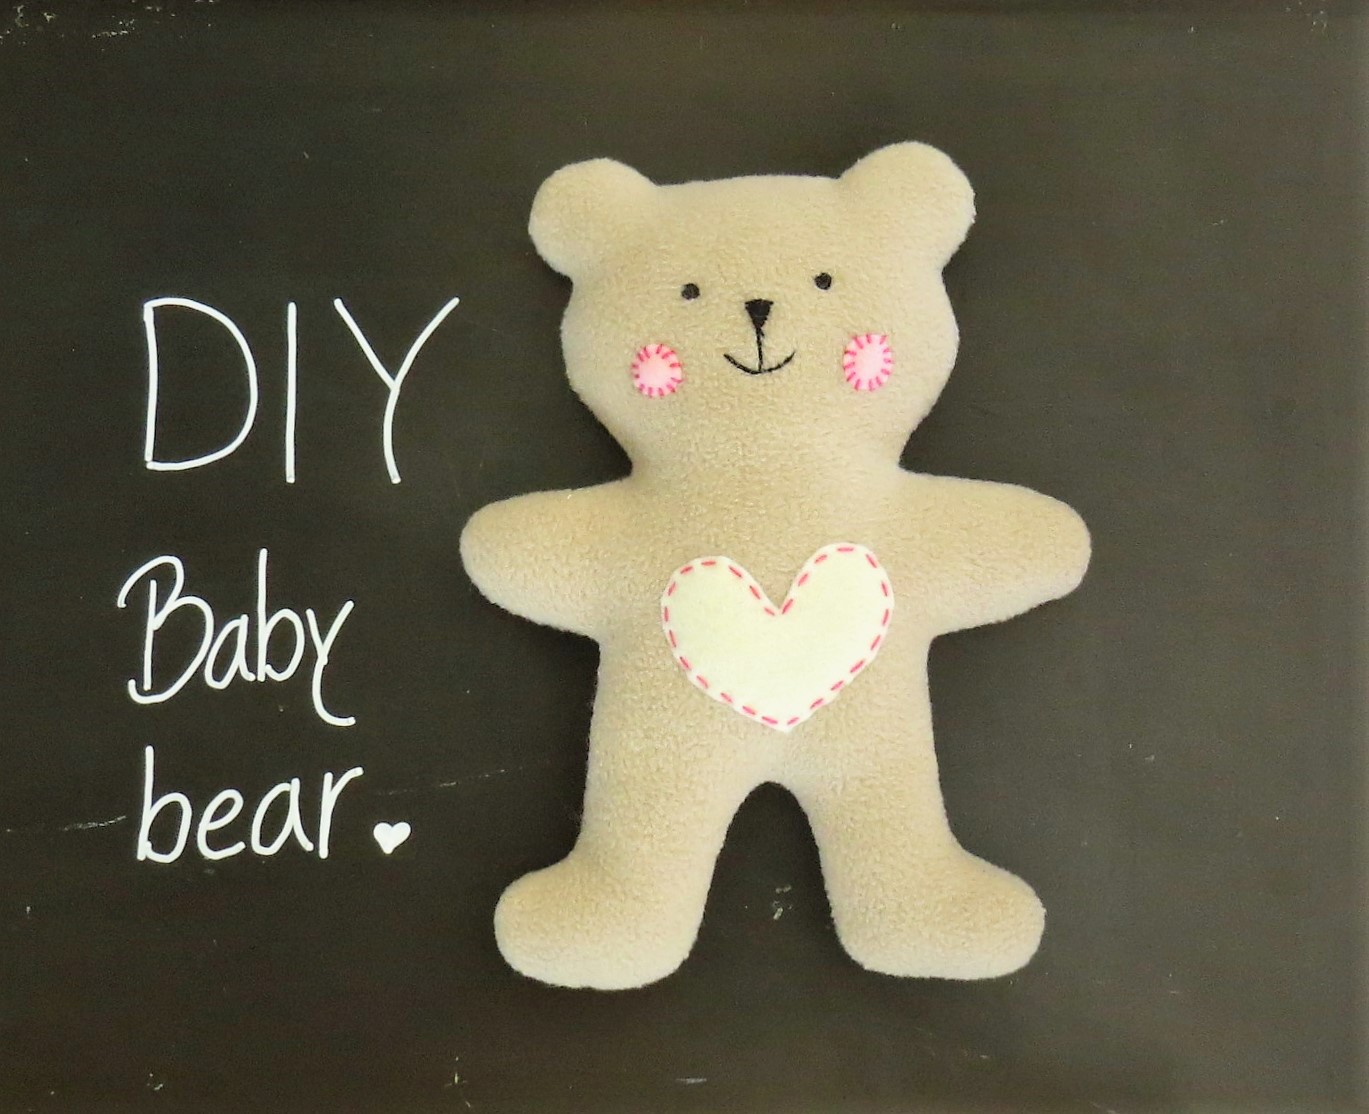 DIY teddy bear free pattern and tutorial